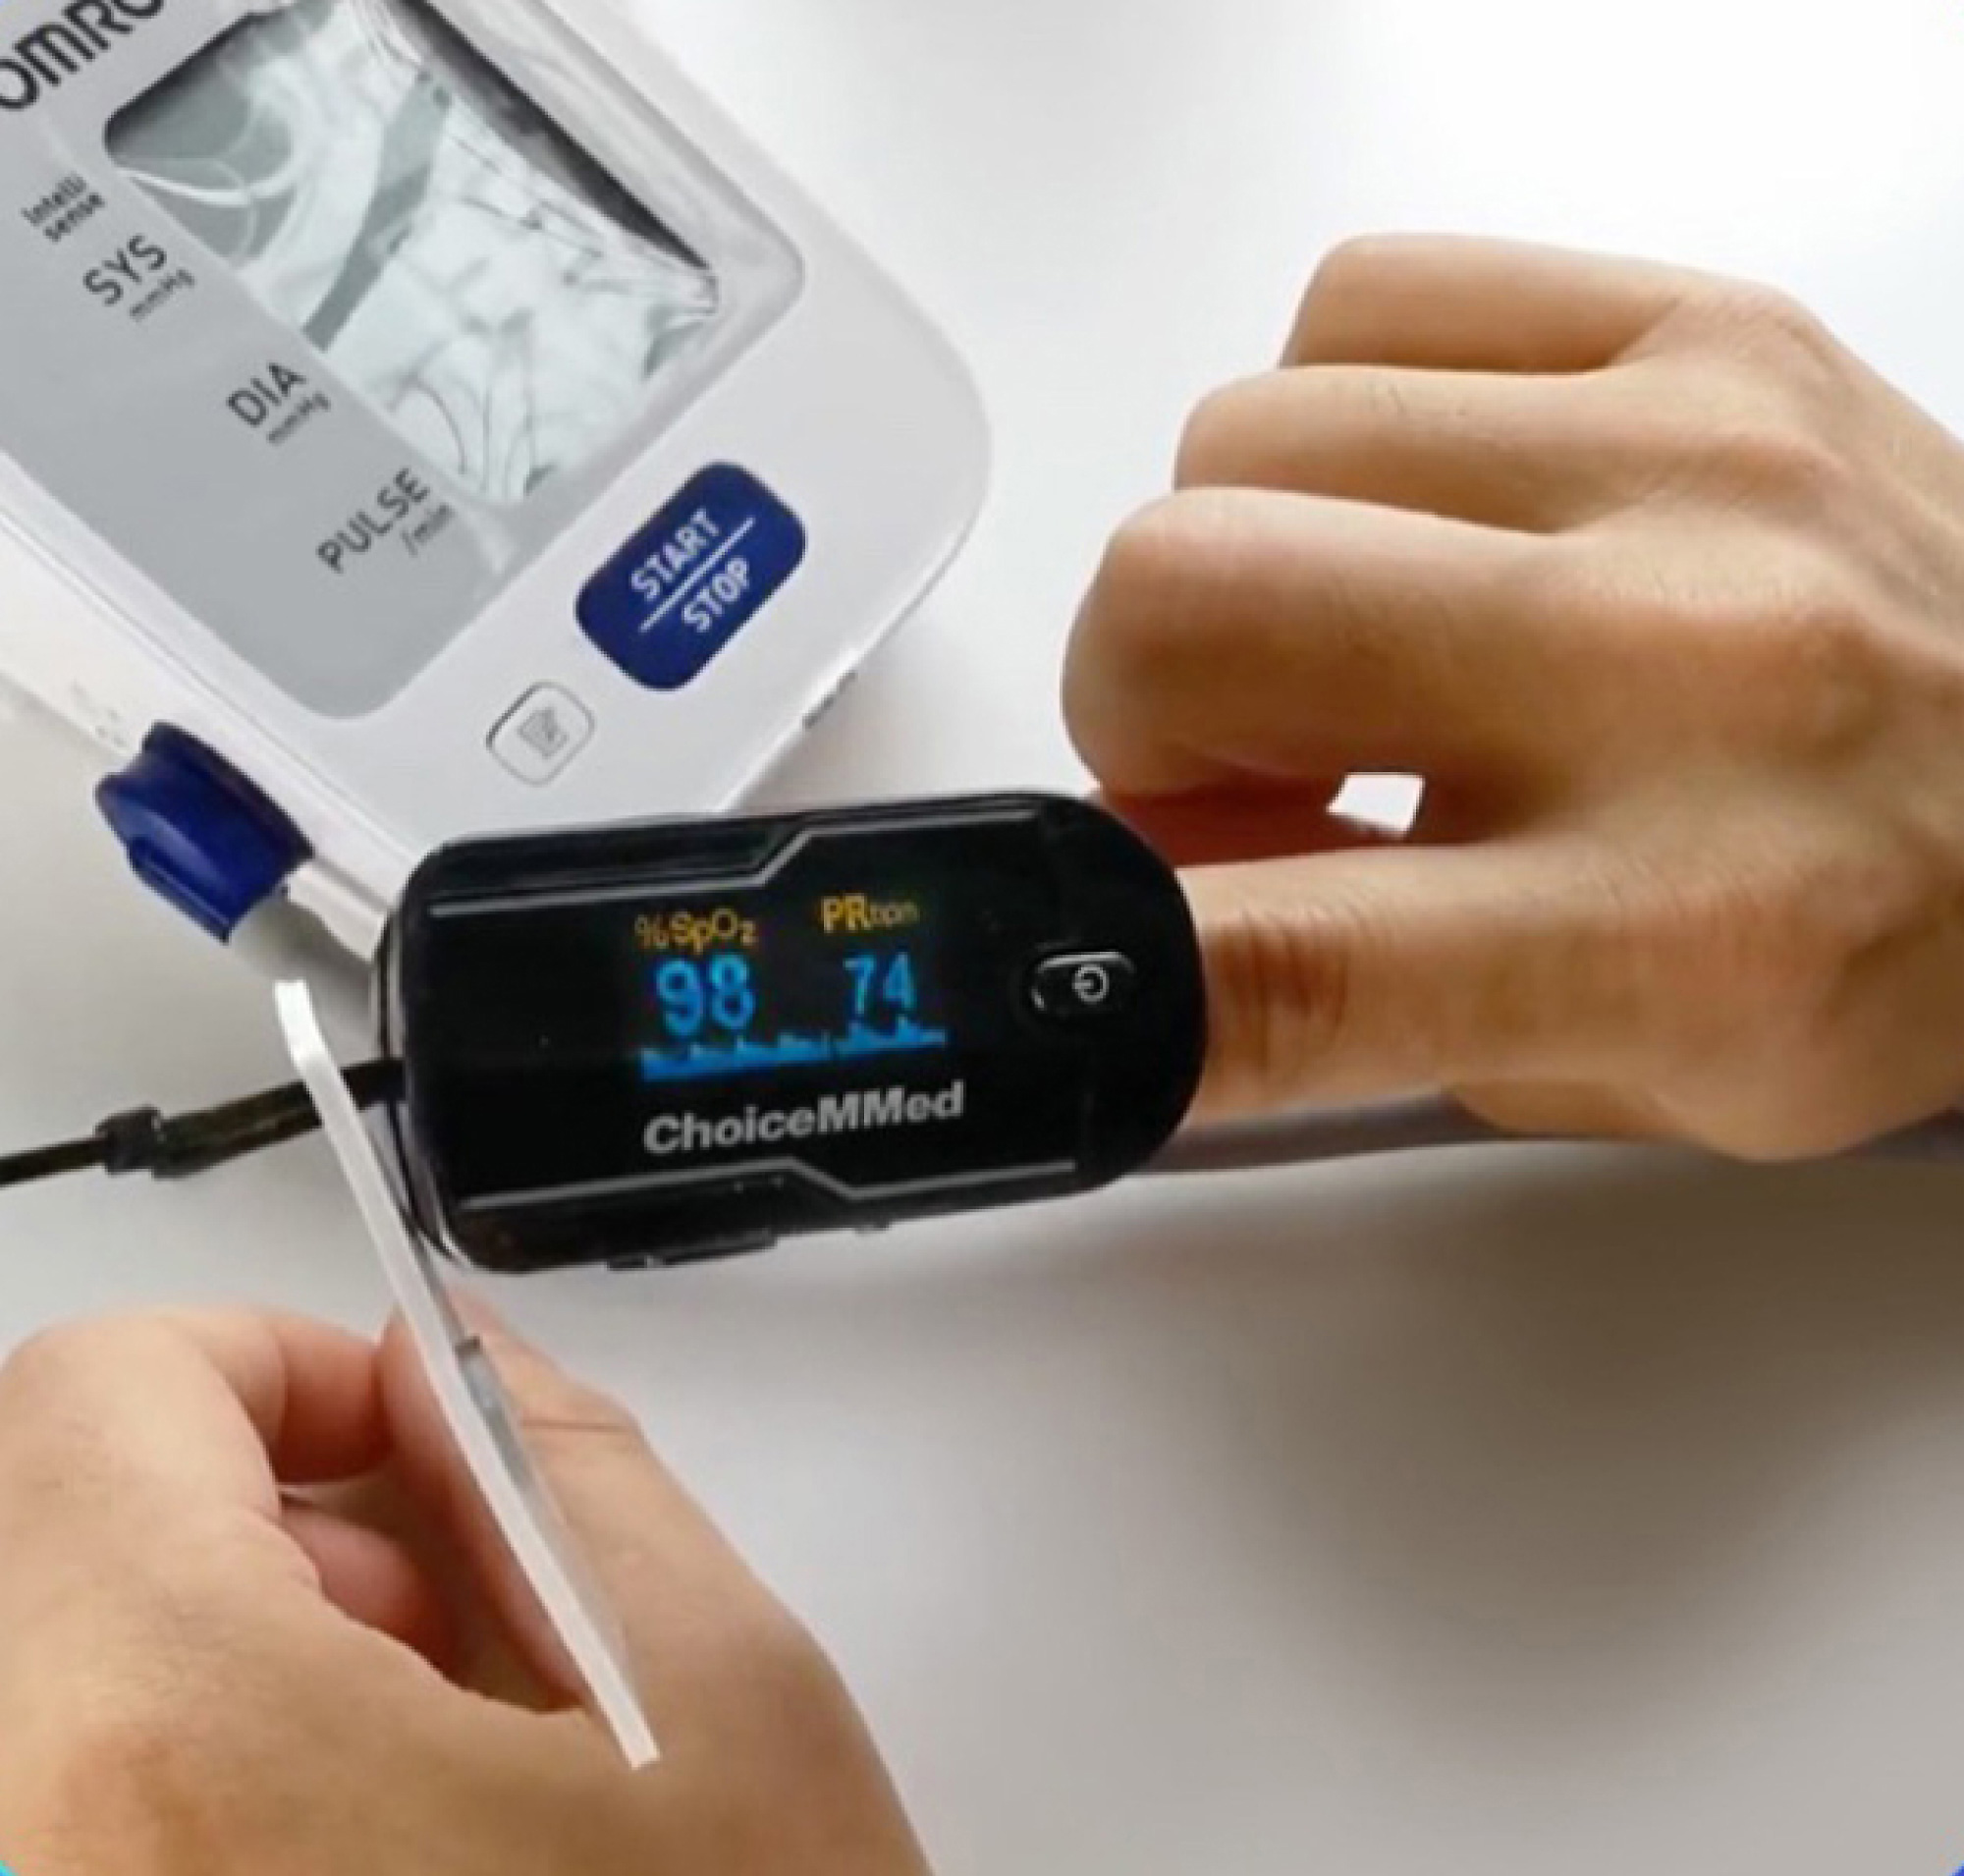 Inimene kasutab sõrmeotsa pulssoksümeetrit hapniku küllastumise ja pulsisageduse mõõtmiseks, mis kuvatakse seadme digitaalsel ekraanil.